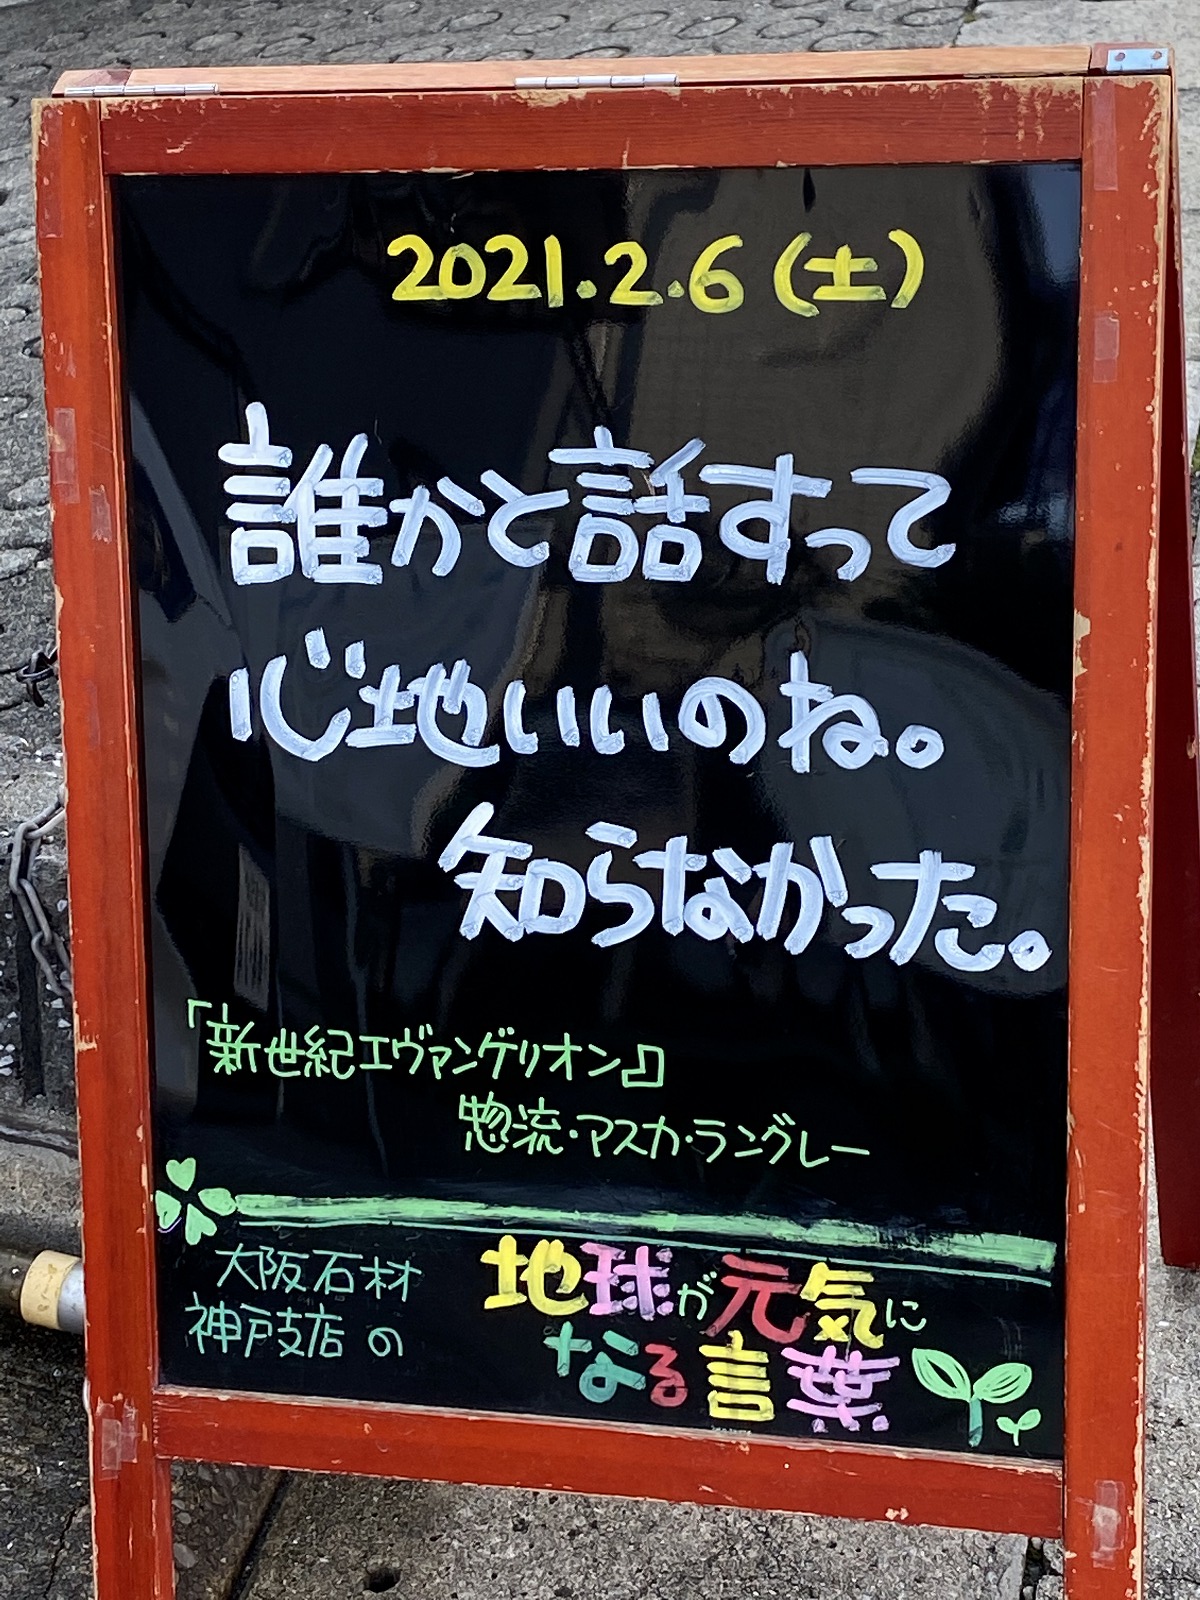 神戸の墓石店「地球が元気になる言葉」の写真　2021年2月6日